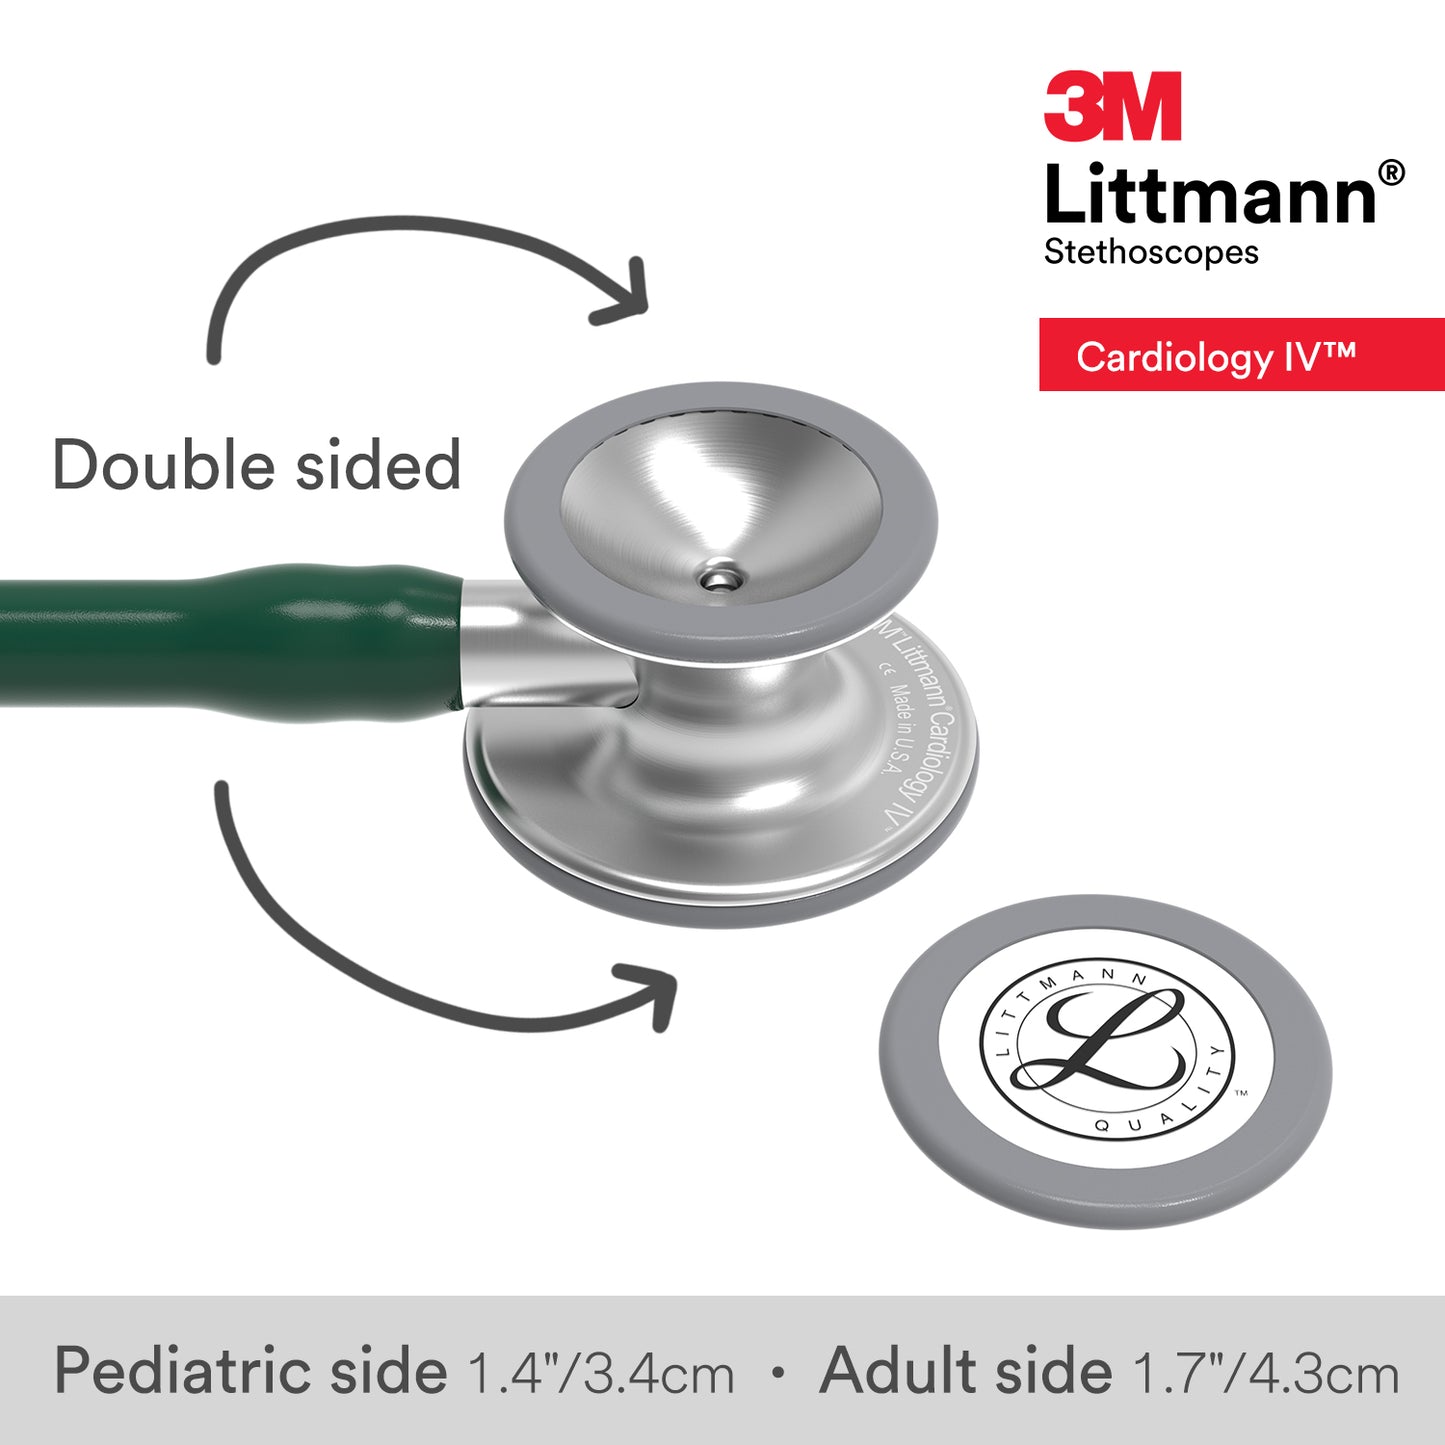 Littmann Cardiology IV Stethoscope: Hunter Green 6155 3M Littmann